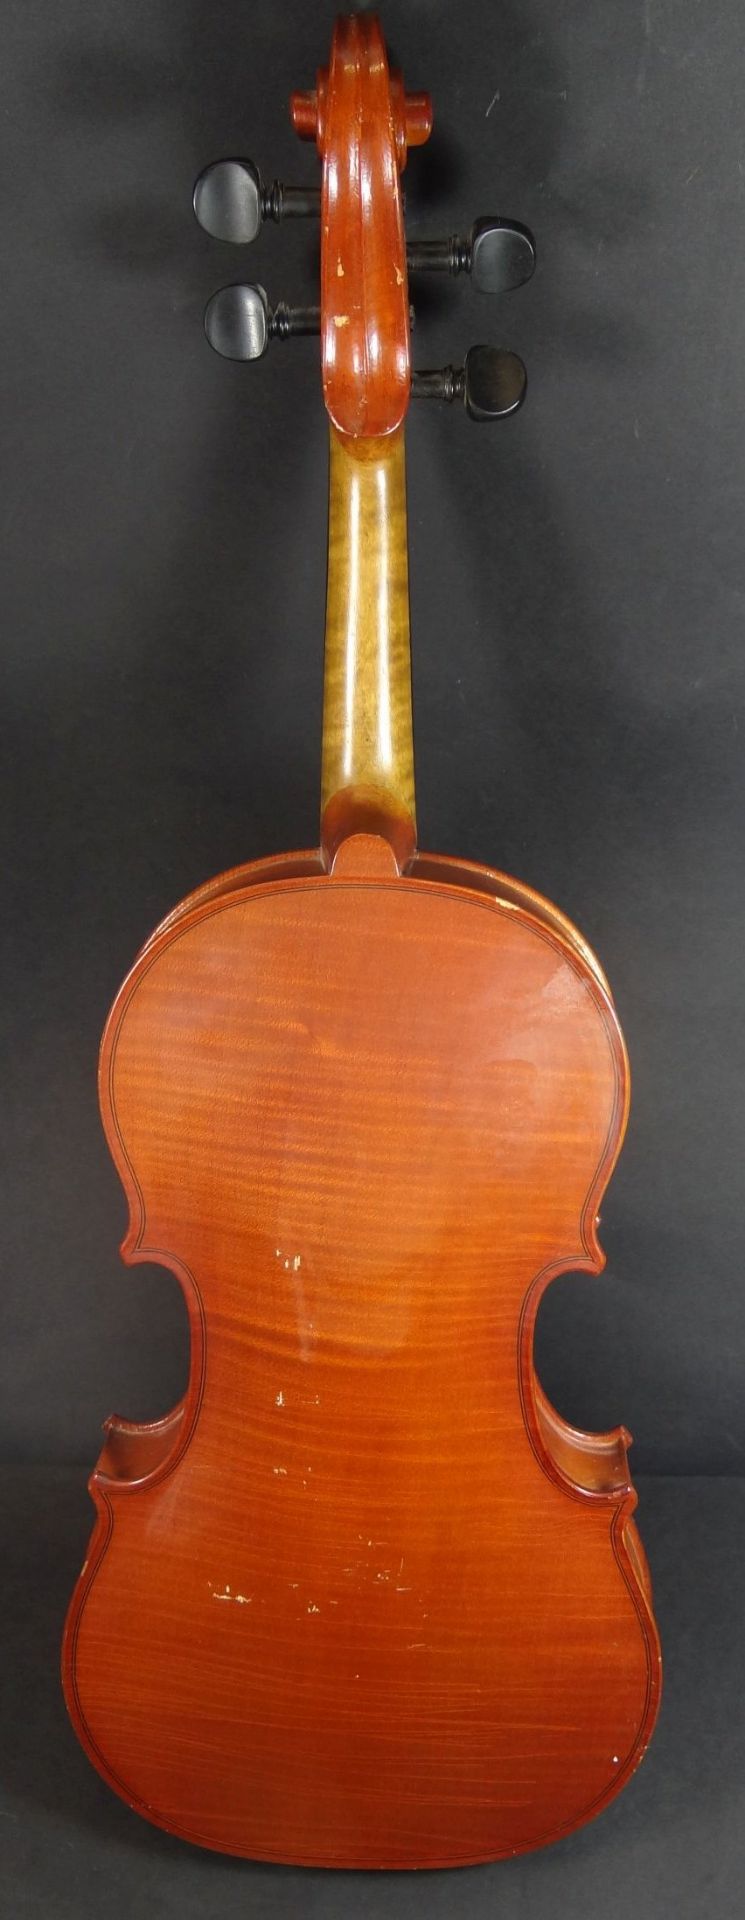 Violine , innen Etikette "Tartini Konzert Violine" Model Strradivarius 1725, Kratzer, einige - Bild 7 aus 10